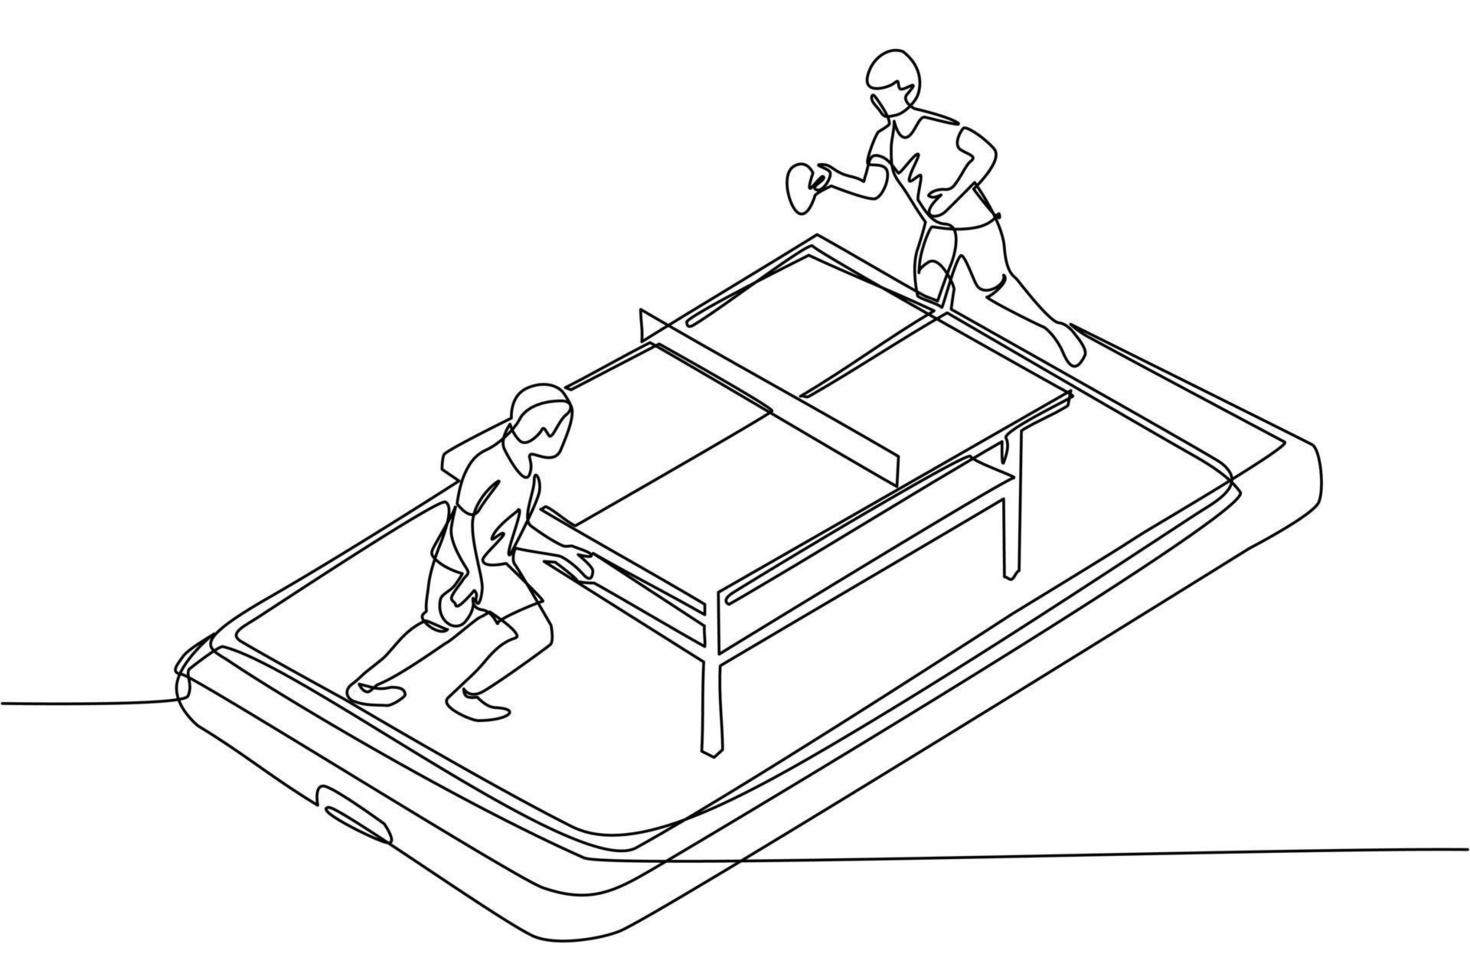 quadra de tênis de mesa de desenho de linha contínua única com dois jogadores na tela do smartphone. jogadores de tênis de mesa de competição esportiva profissional durante a partida, aplicativo móvel. vetor de design de desenho de uma linha